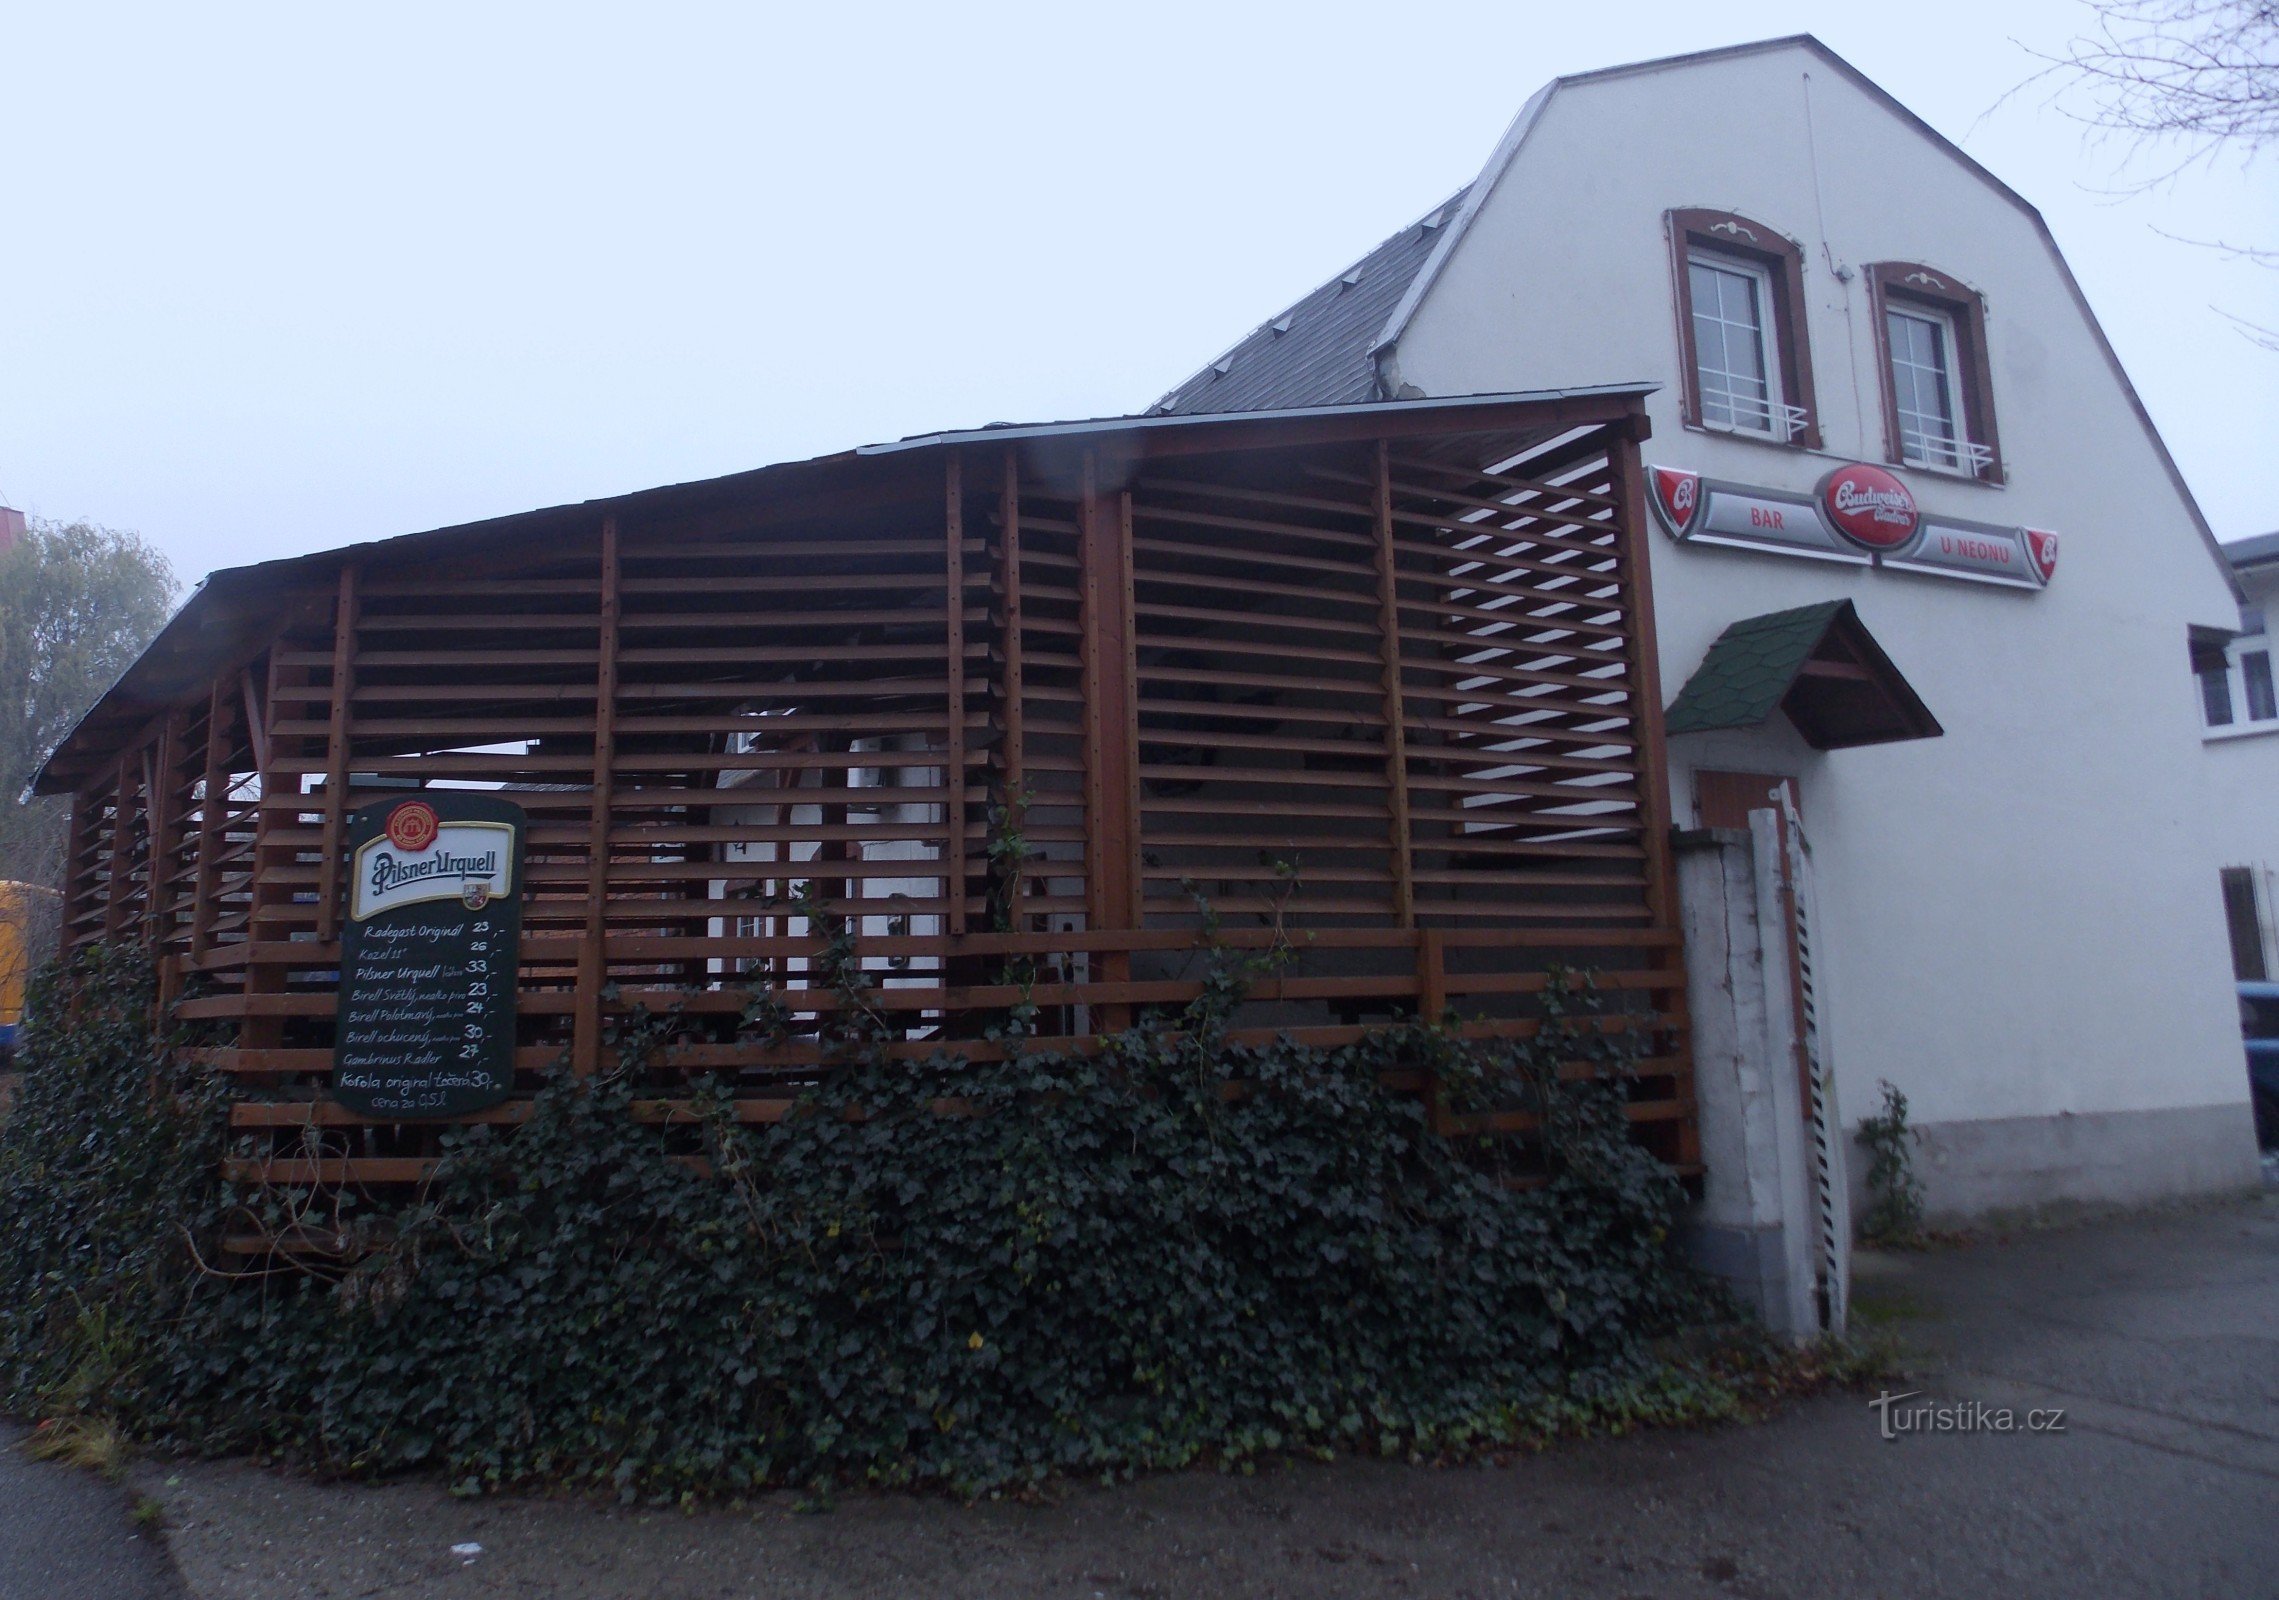 Nhà hàng U Neonu ở Malenovice vùng Zlín